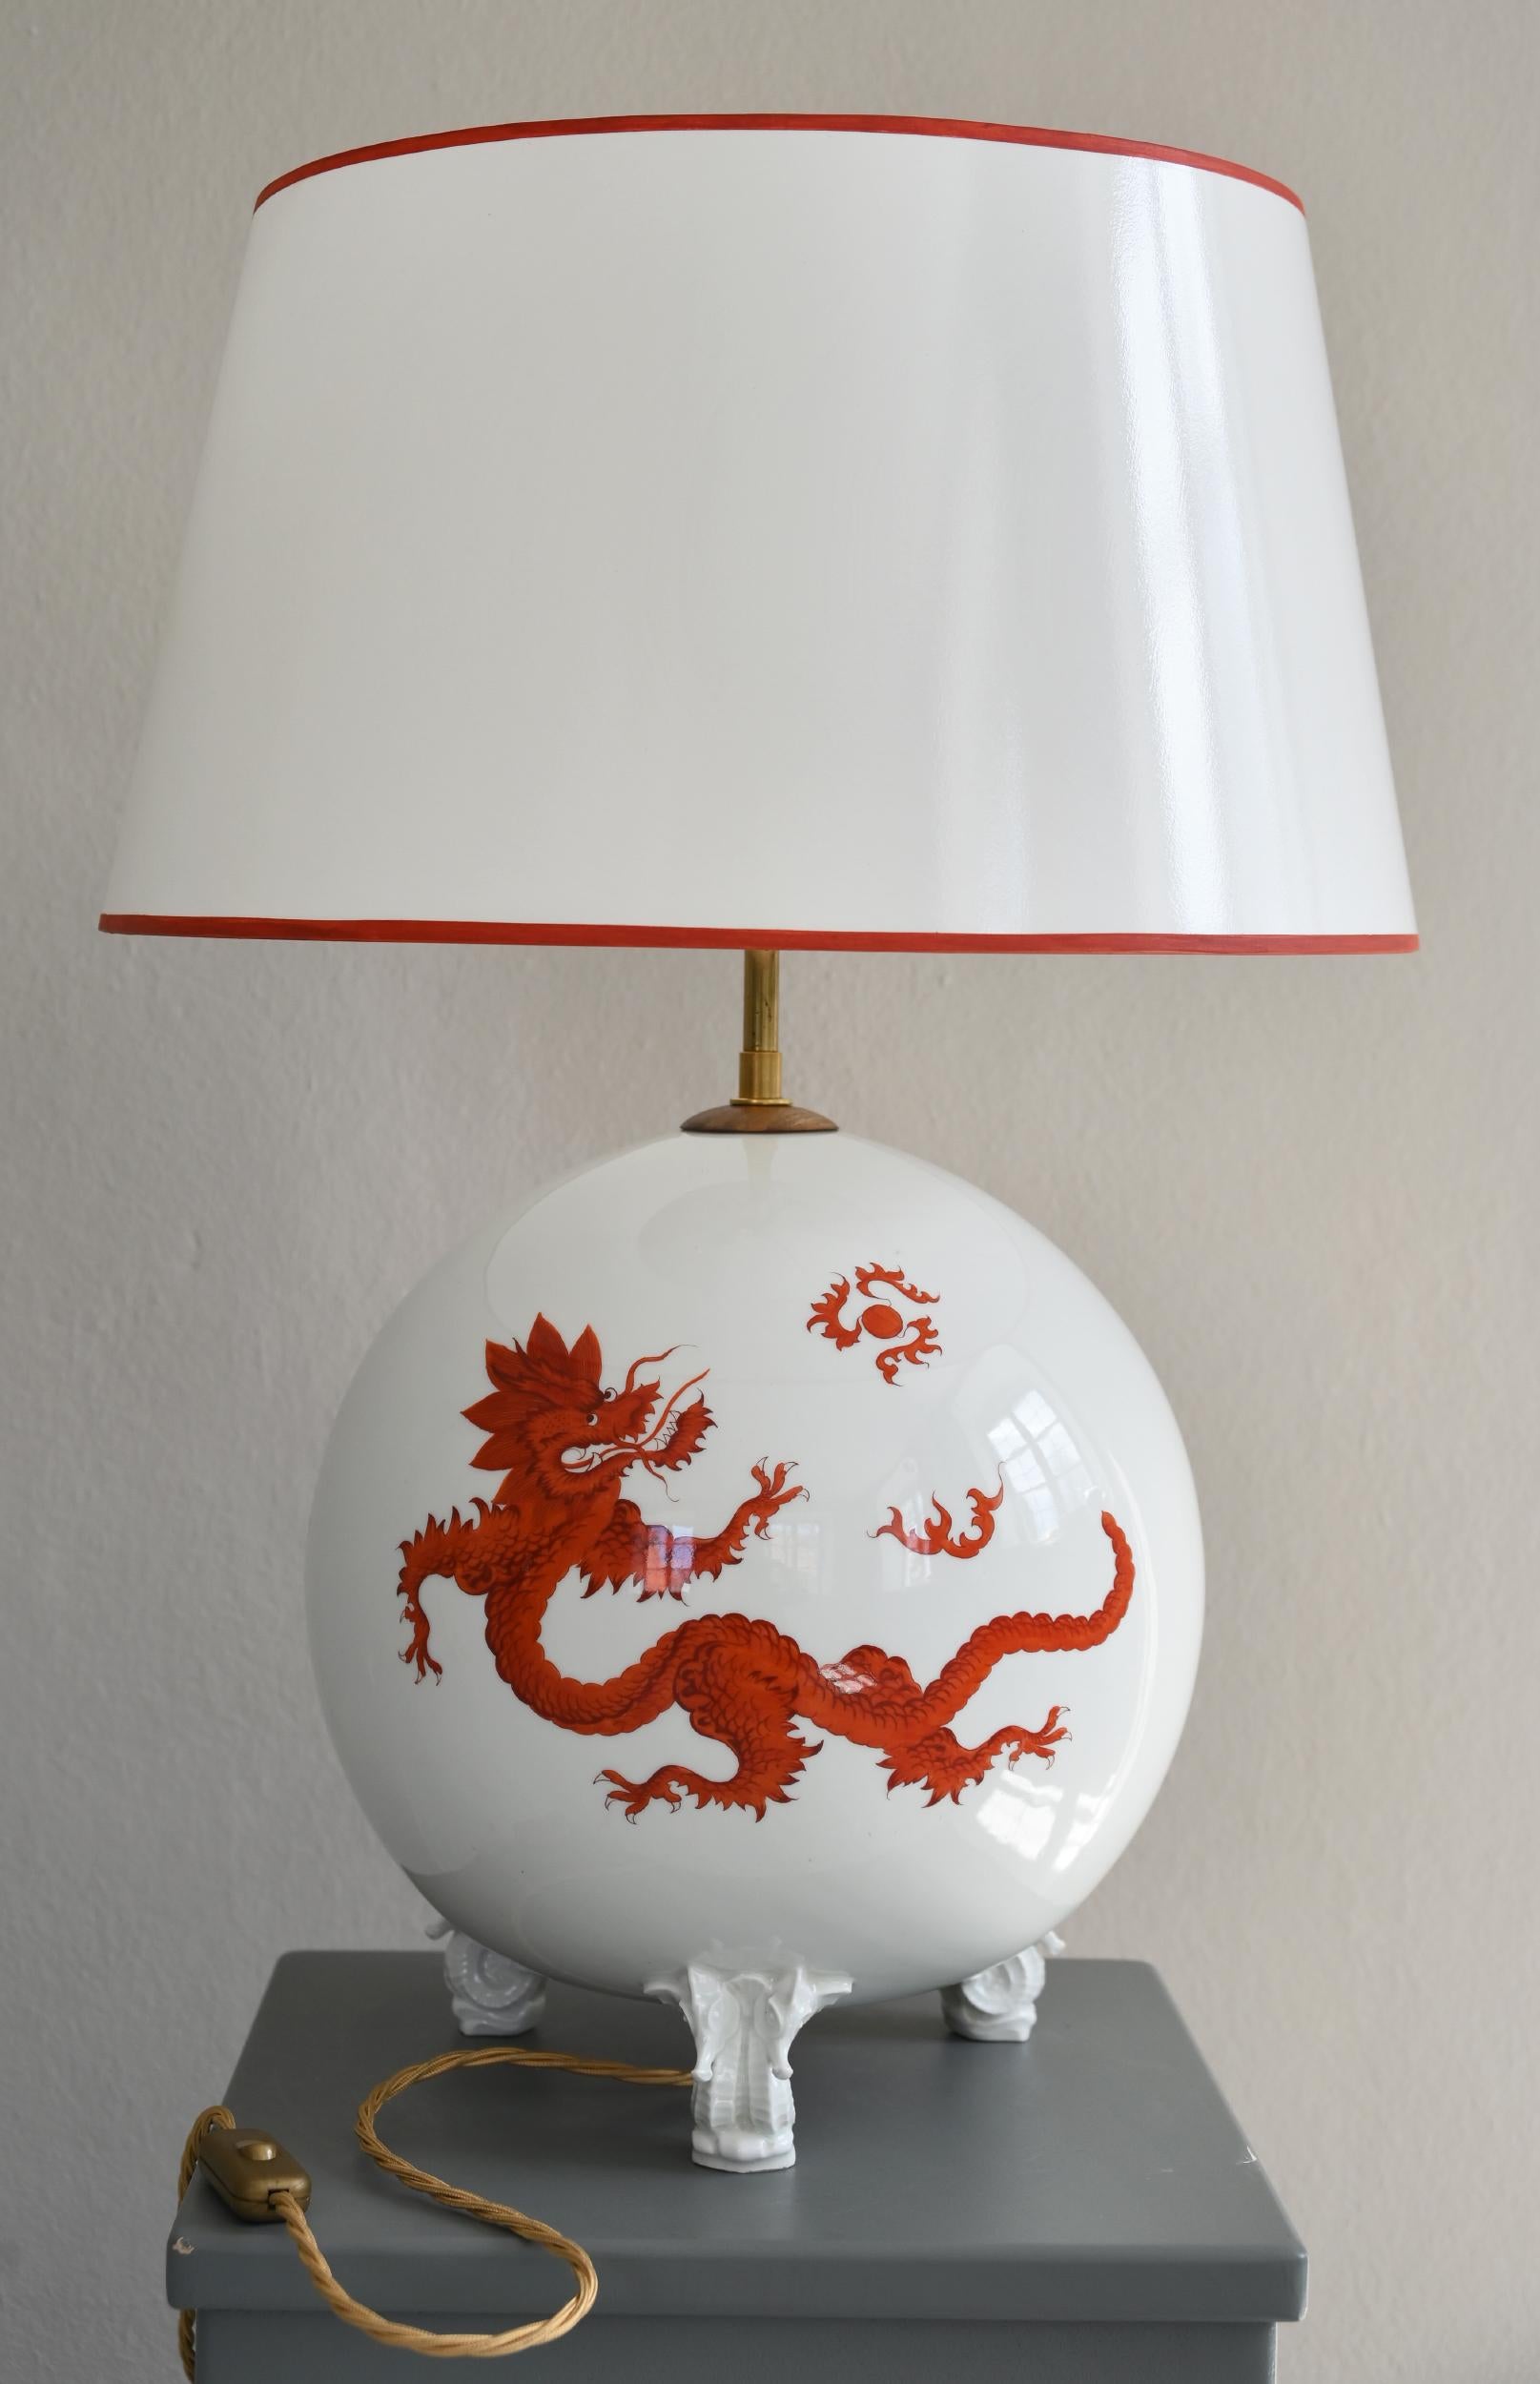 Seltene Kugellampe aus der Meissener Porzellanmanufaktur.
Seit der Gründung des Meissener Porzellanunternehmens im Jahr 1710 steht das Meissener Porzellan für hochwertiges Porzellan und außergewöhnliche Handwerkskunst. Diese kugelförmige Vase ist